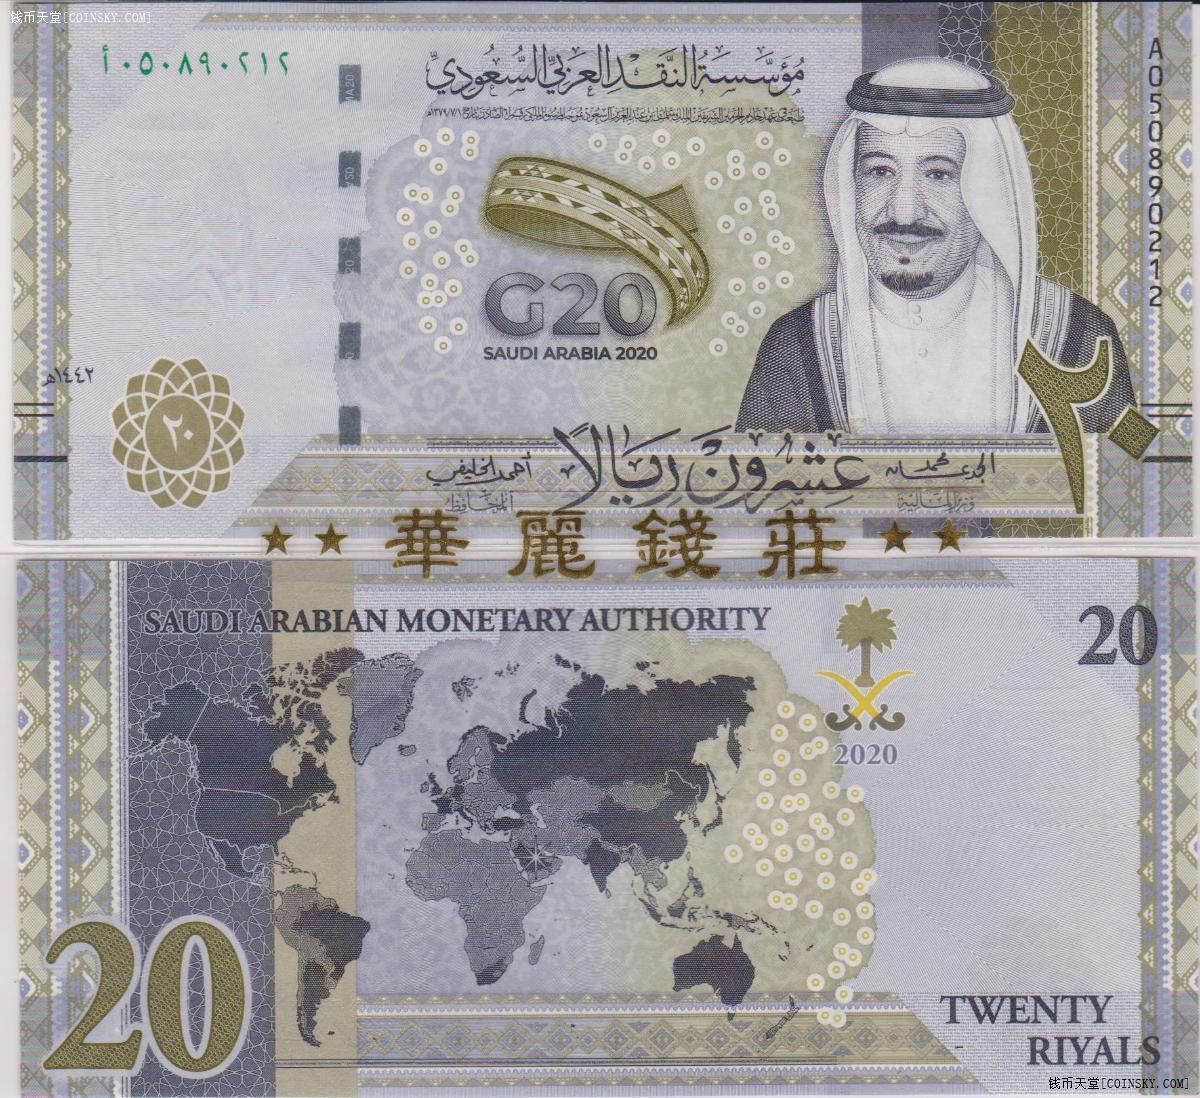 2020年沙特阿拉伯20里亚尔纪念钞g20峰会首发冠 错版